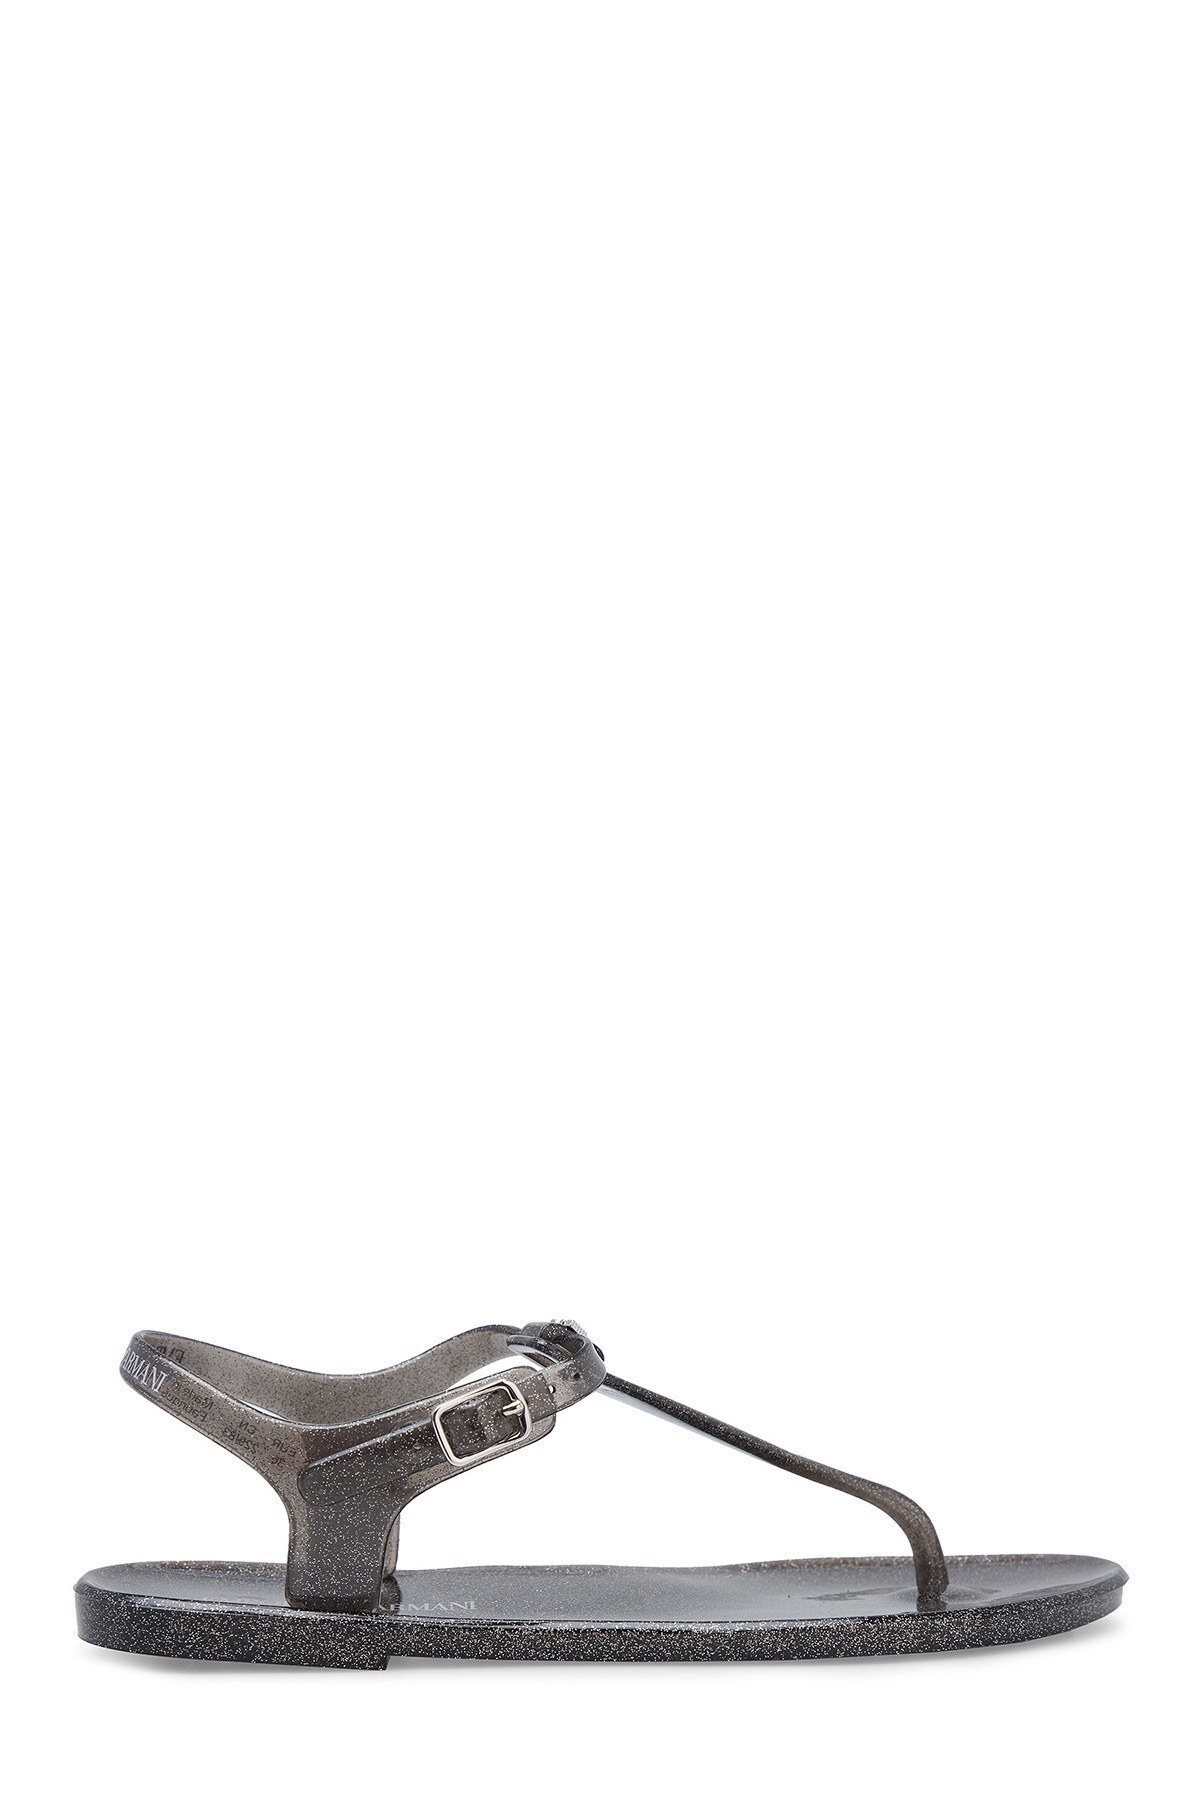 Emporio Armani Kadın Sandalet X3QS06 XL816 M603 SİYAH-GÜMÜŞ